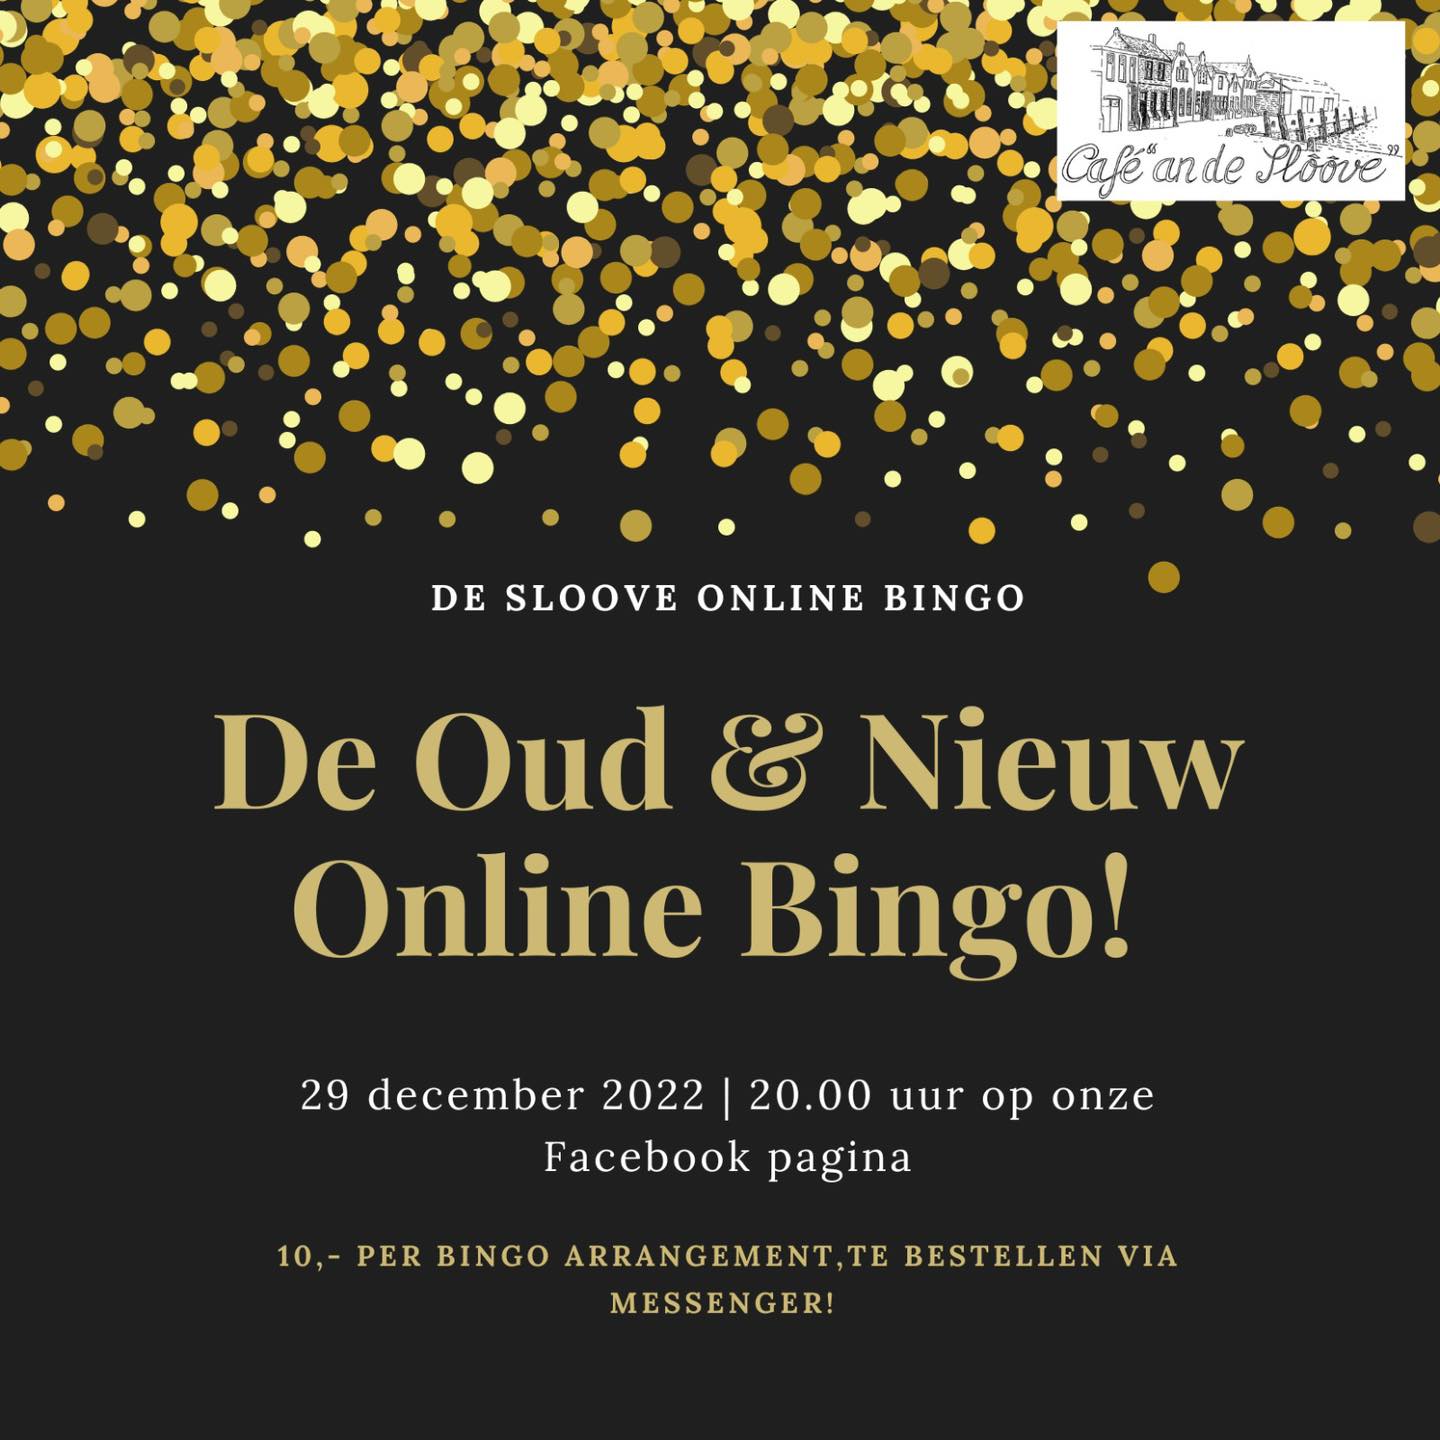 Oud & Nieuw Online Bingo donderdag 29 december 20.00!